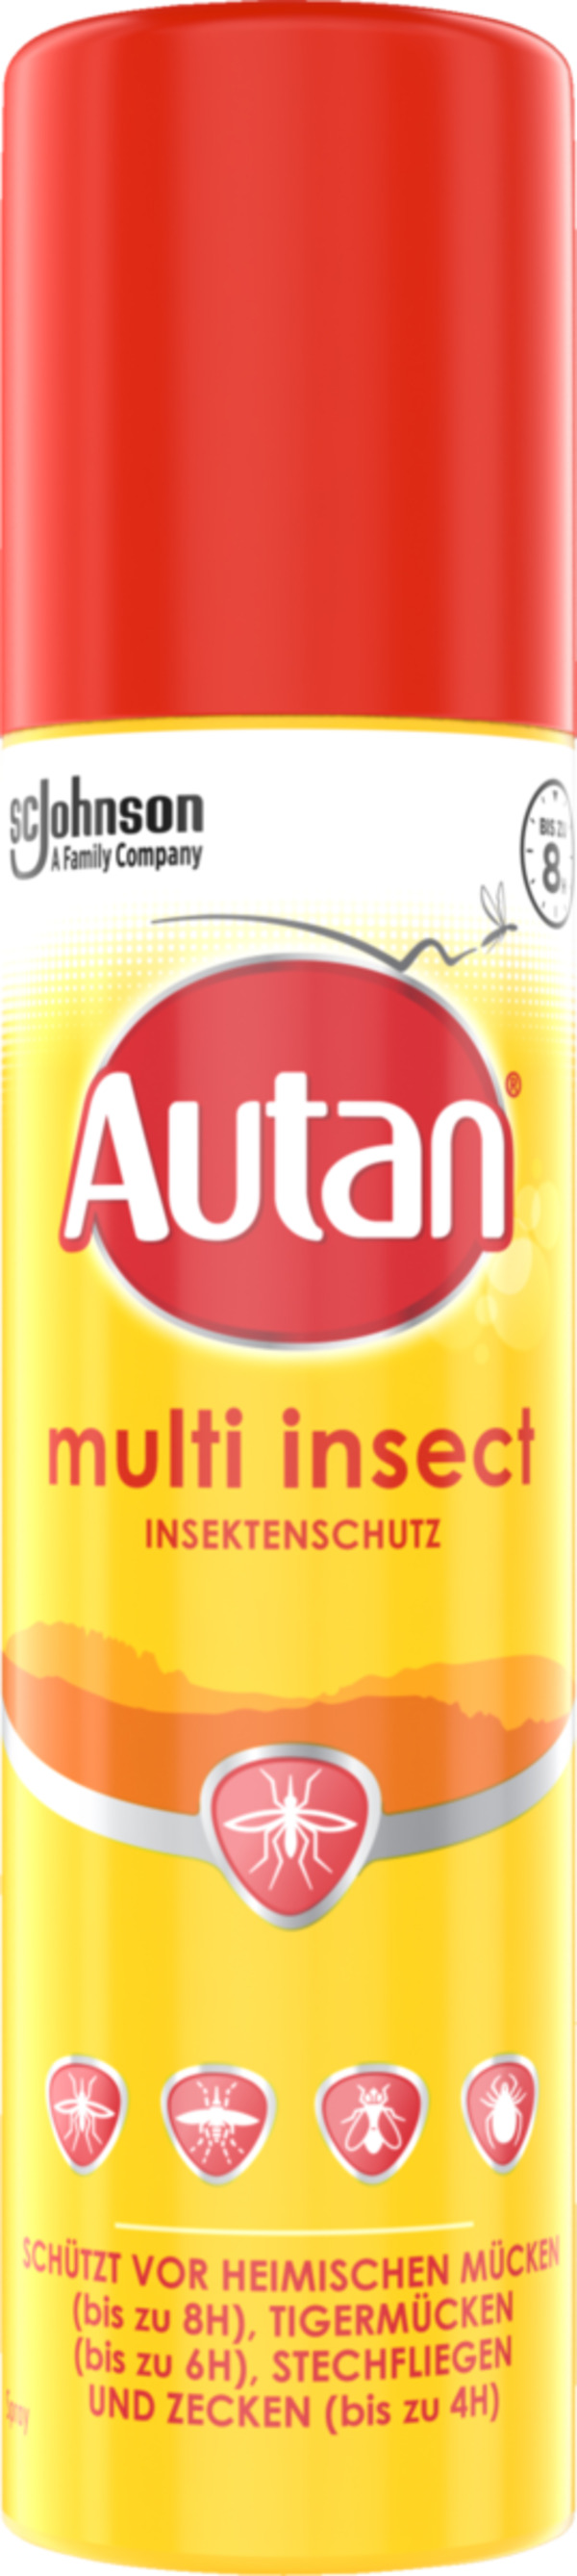 Bild 1 von Autan protectionplus Insktenschutz Spray